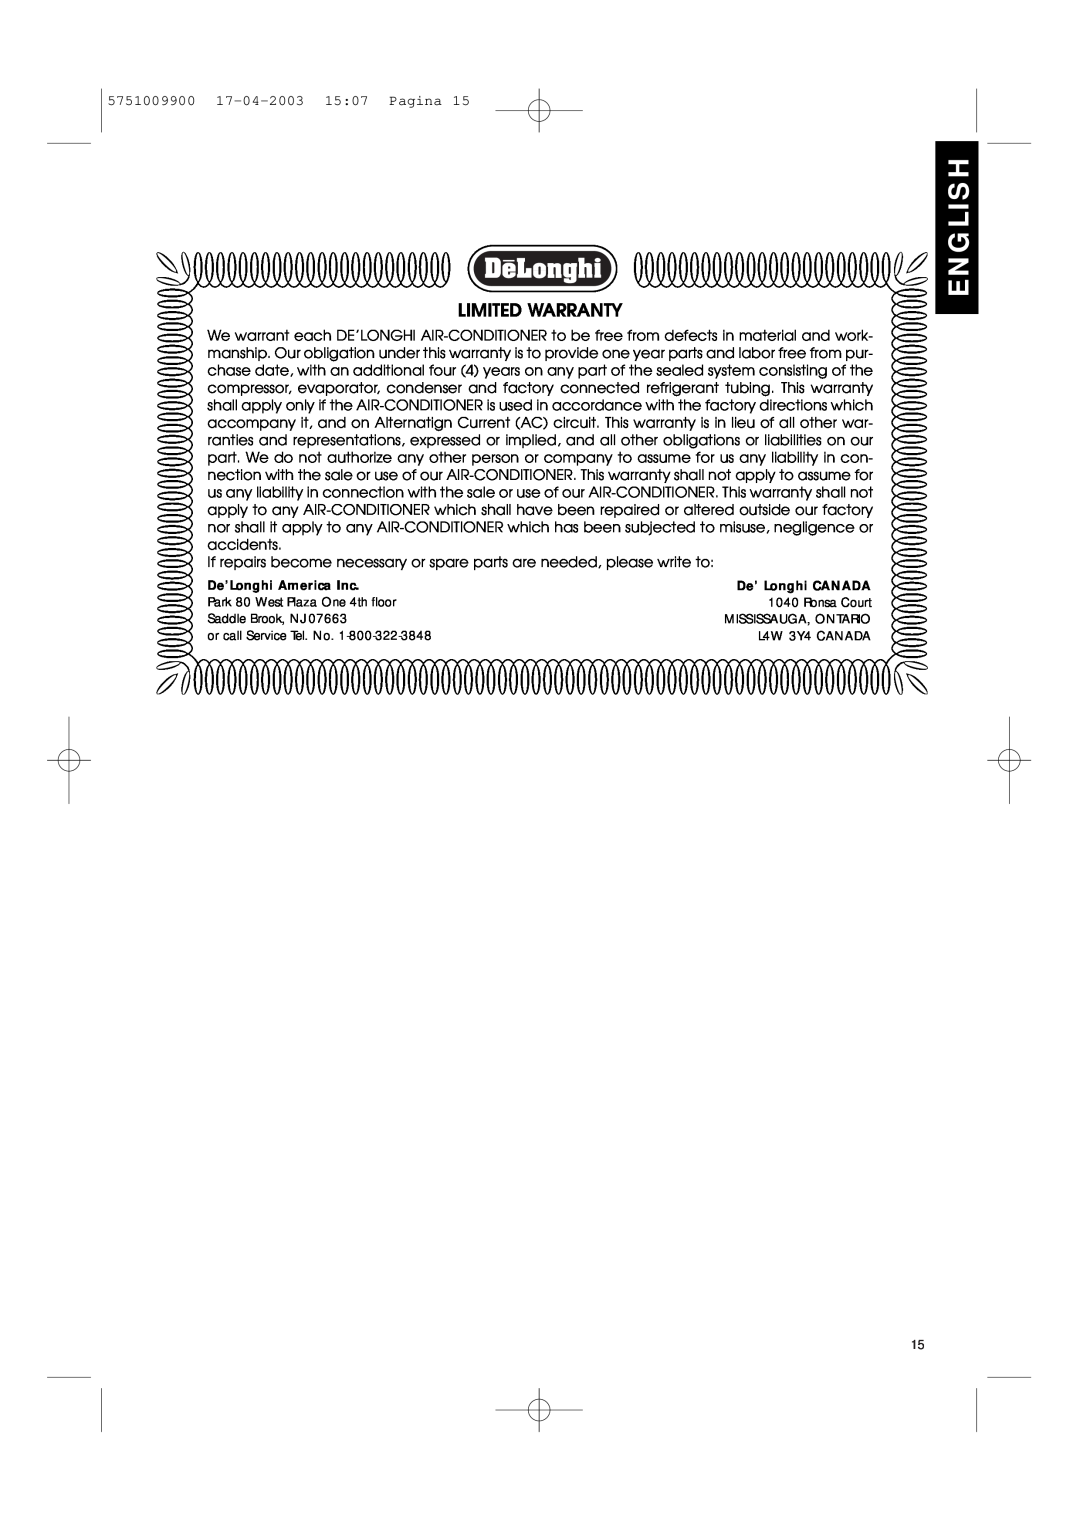 DeLonghi Pac 1000 manual English, Limited Warranty, De’Longhi America Inc, De’ Longhi CANADA 